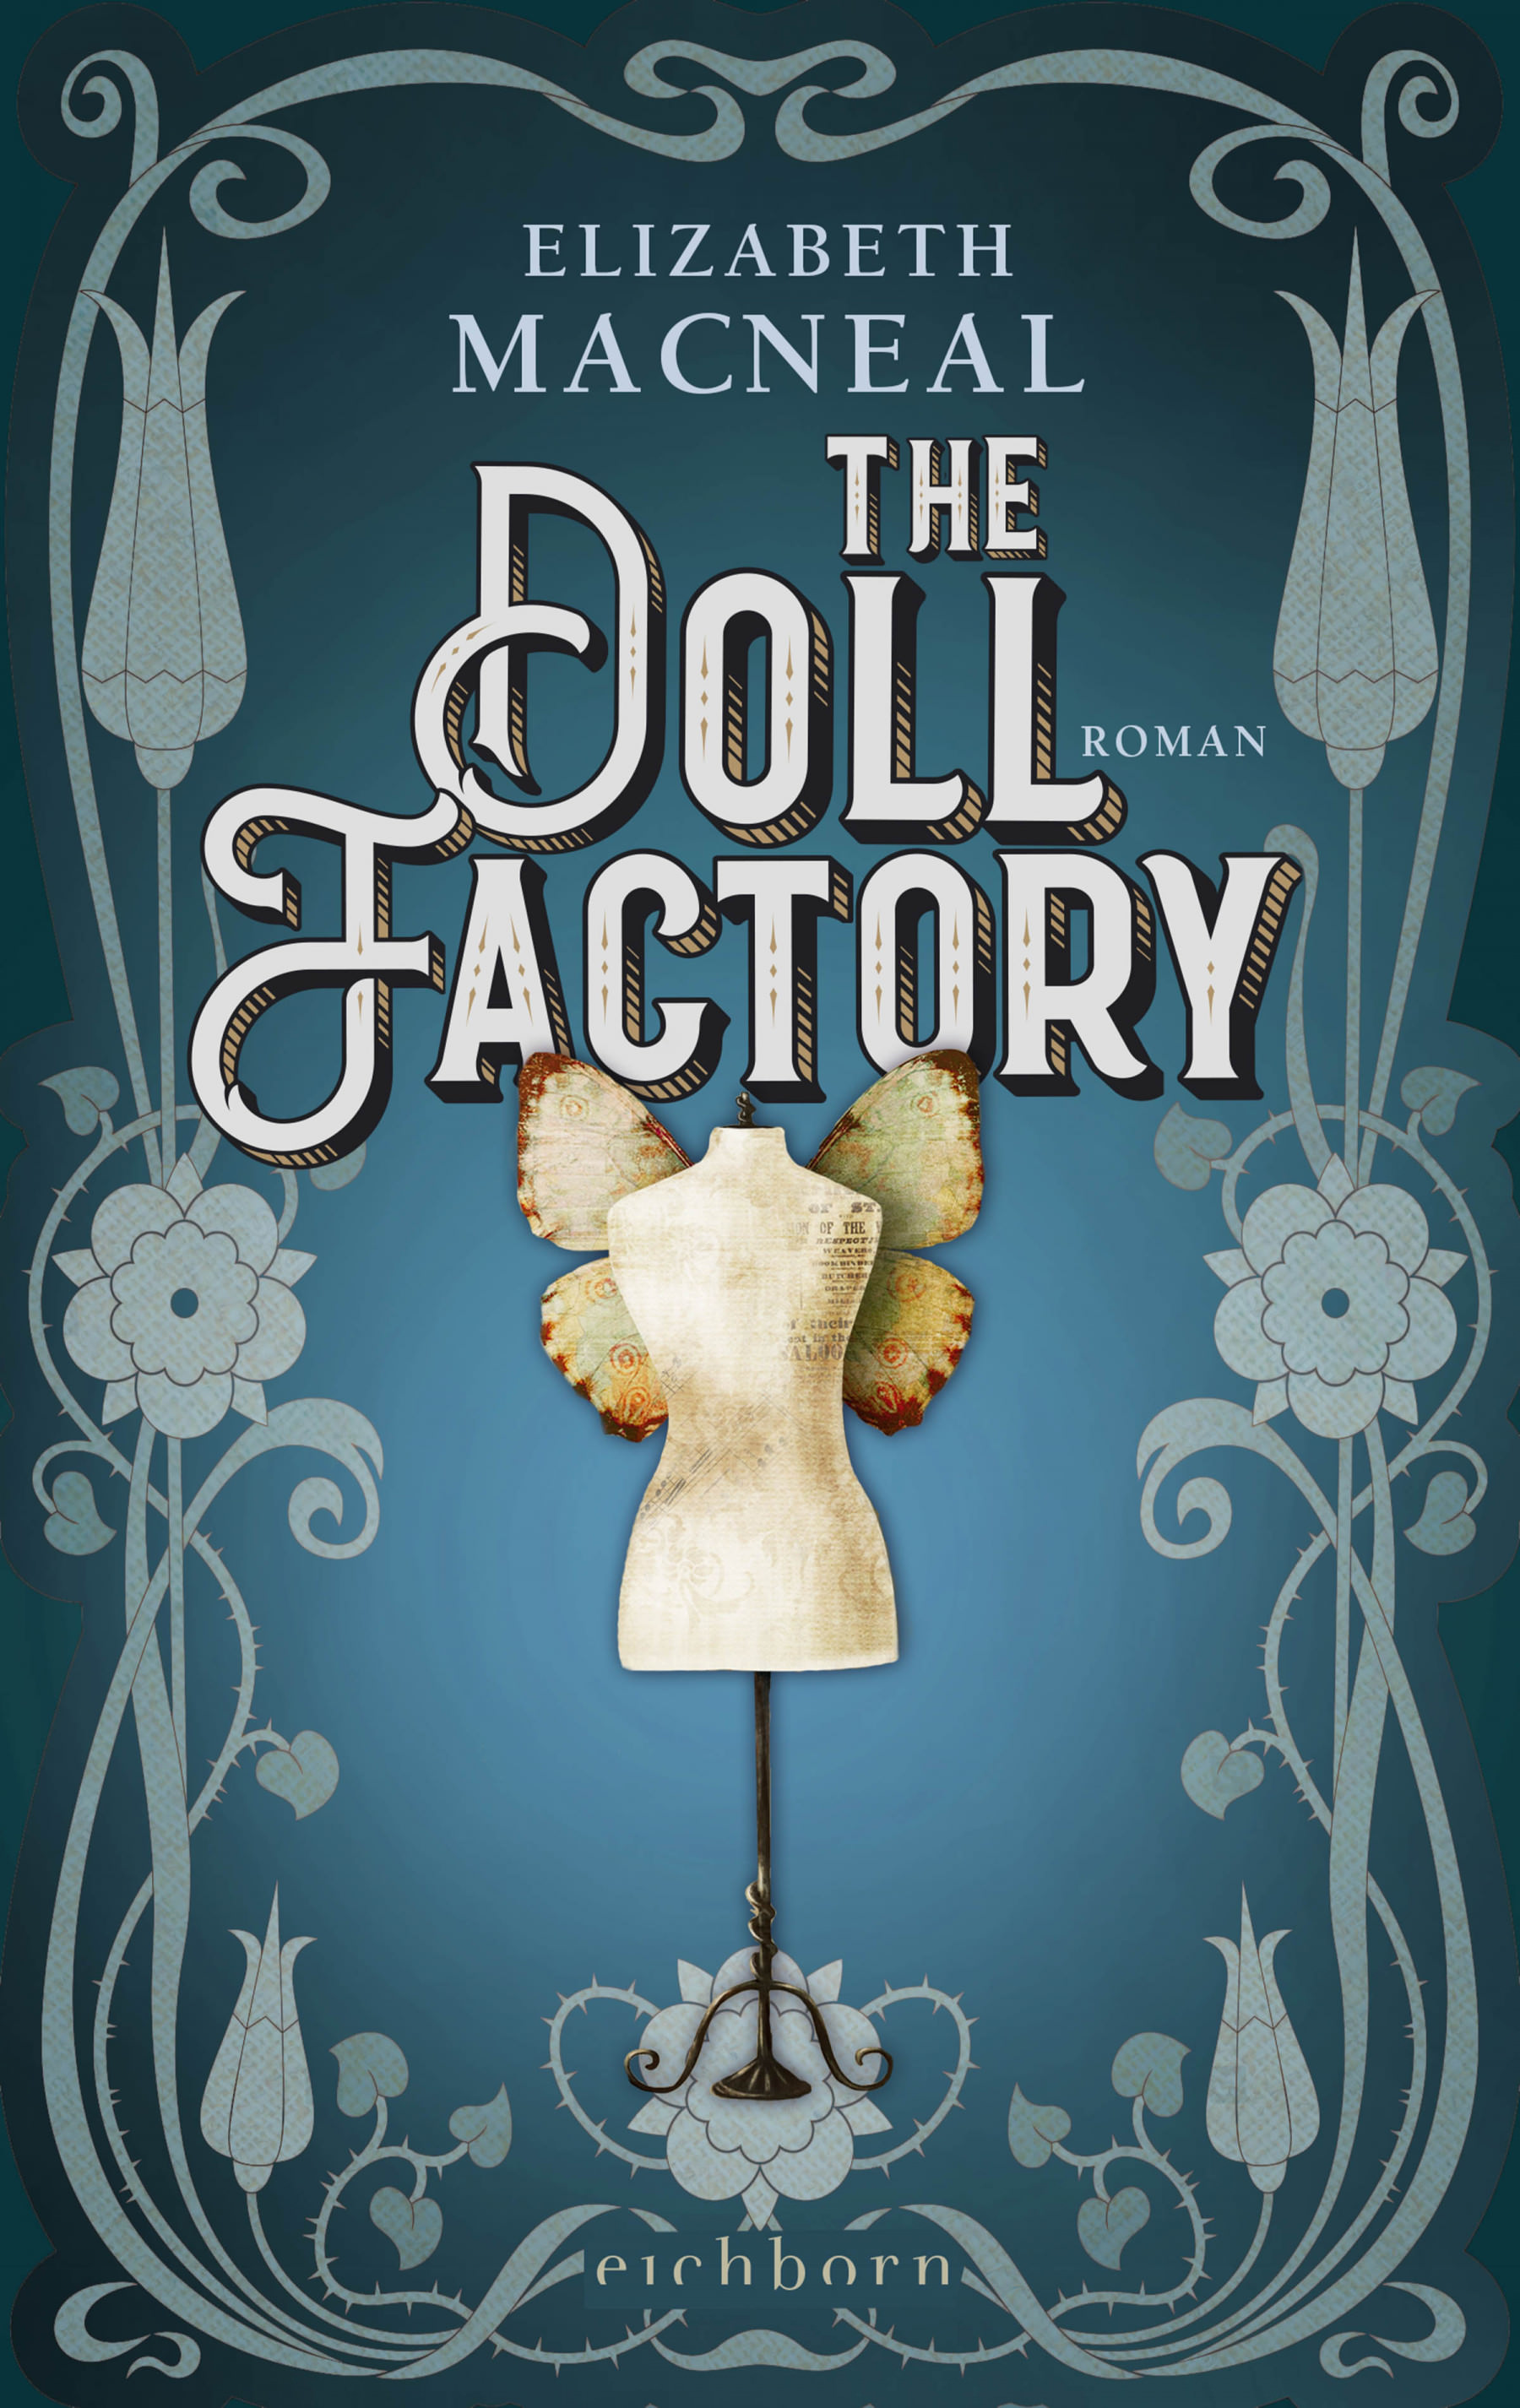 Buchcover: Elizabeth Macneal: The Doll Factory. Eichborn Verlag